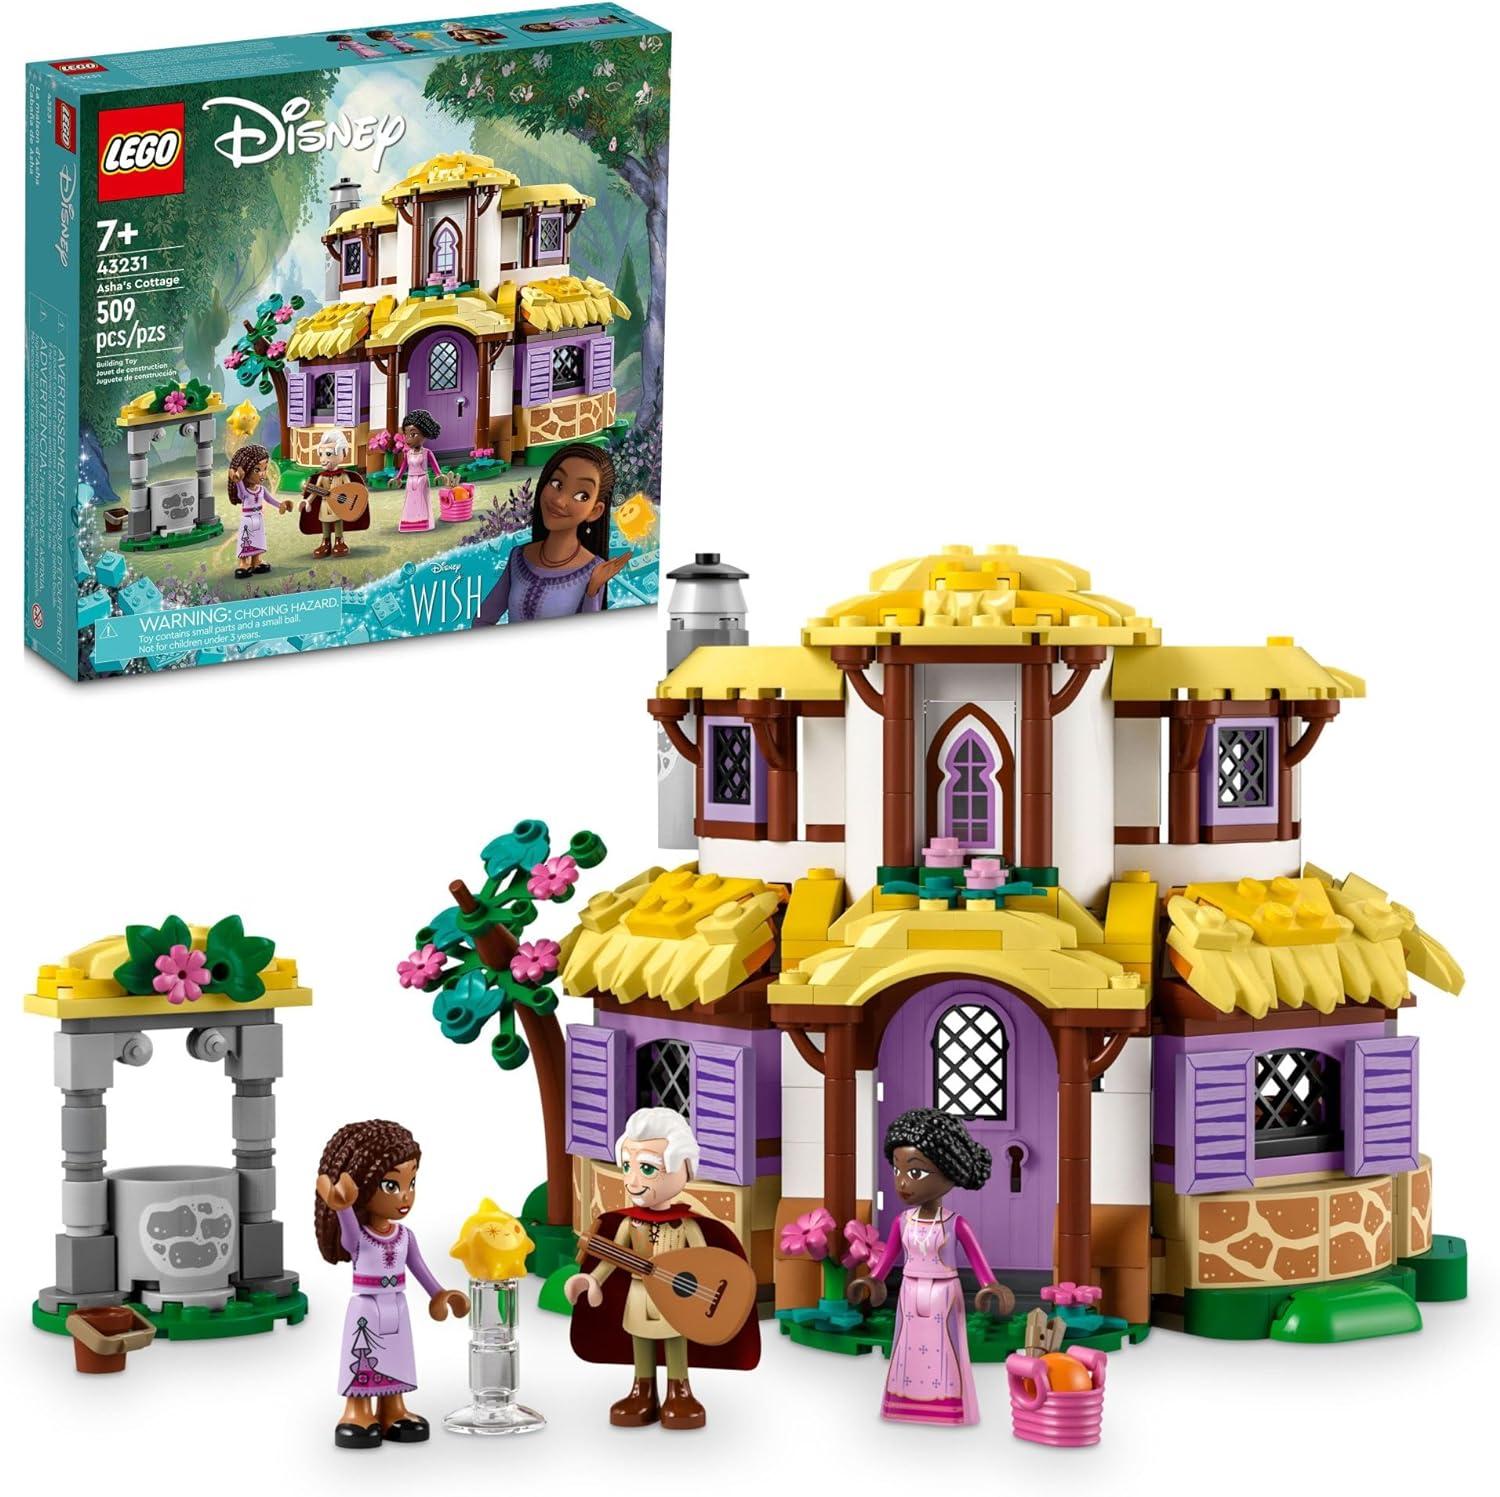 Lego Disney Wish Ashas Cottage Building Toy Set 43231 for $24.99